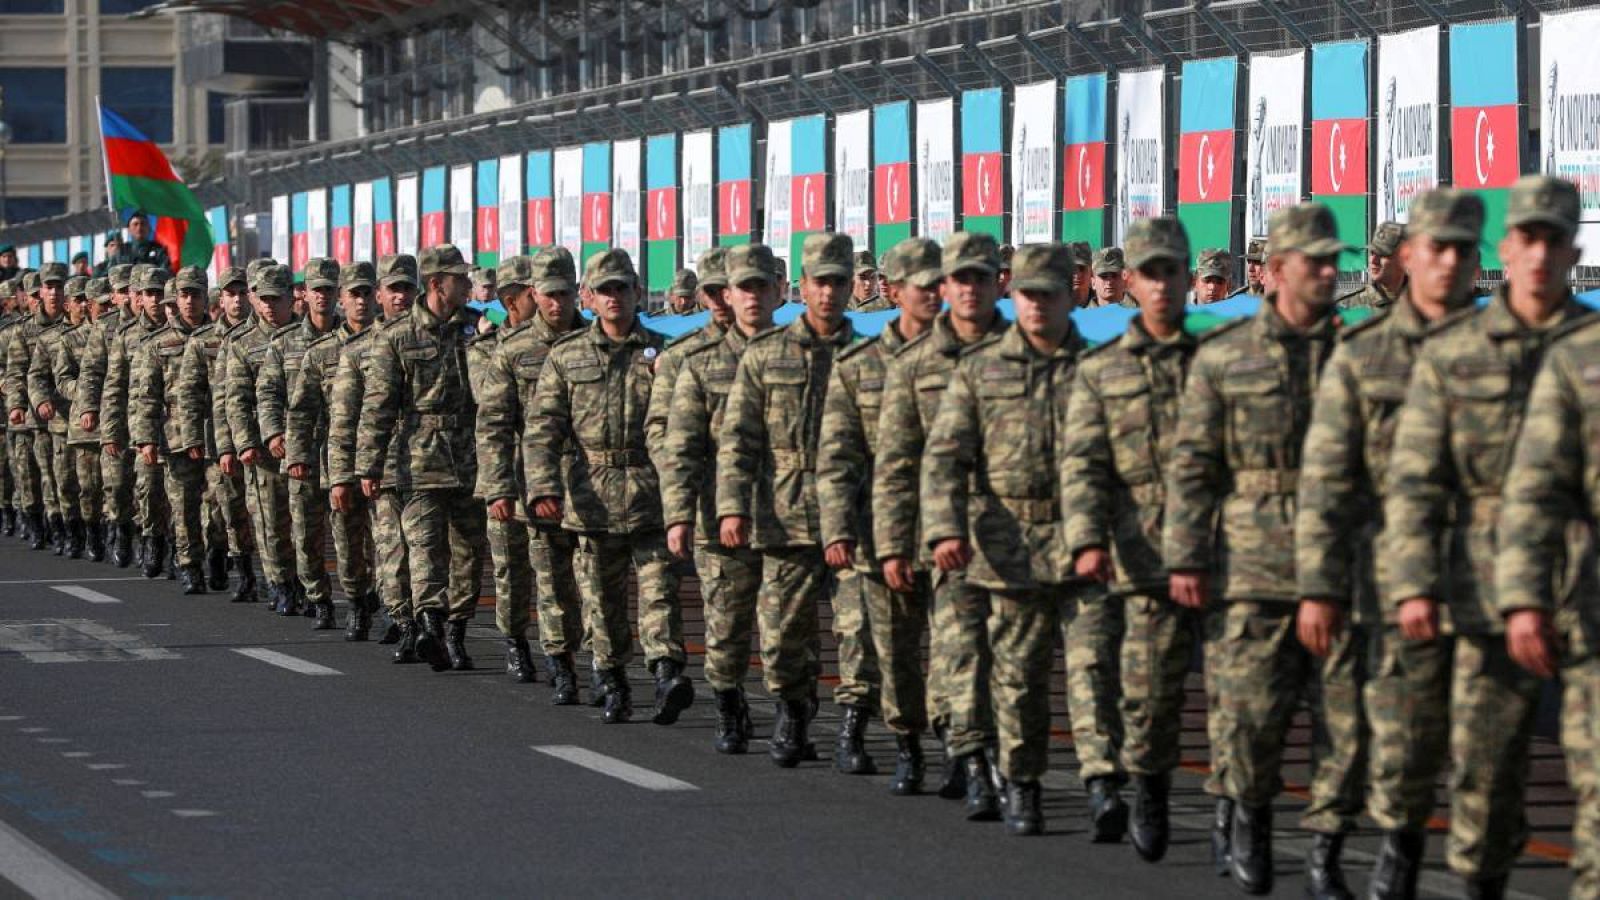 Los miembros del servicio azerí participan en una procesión que marca el aniversario del fin del conflicto militar de 2020 en la región separatista de Nagorno-Karabaj.